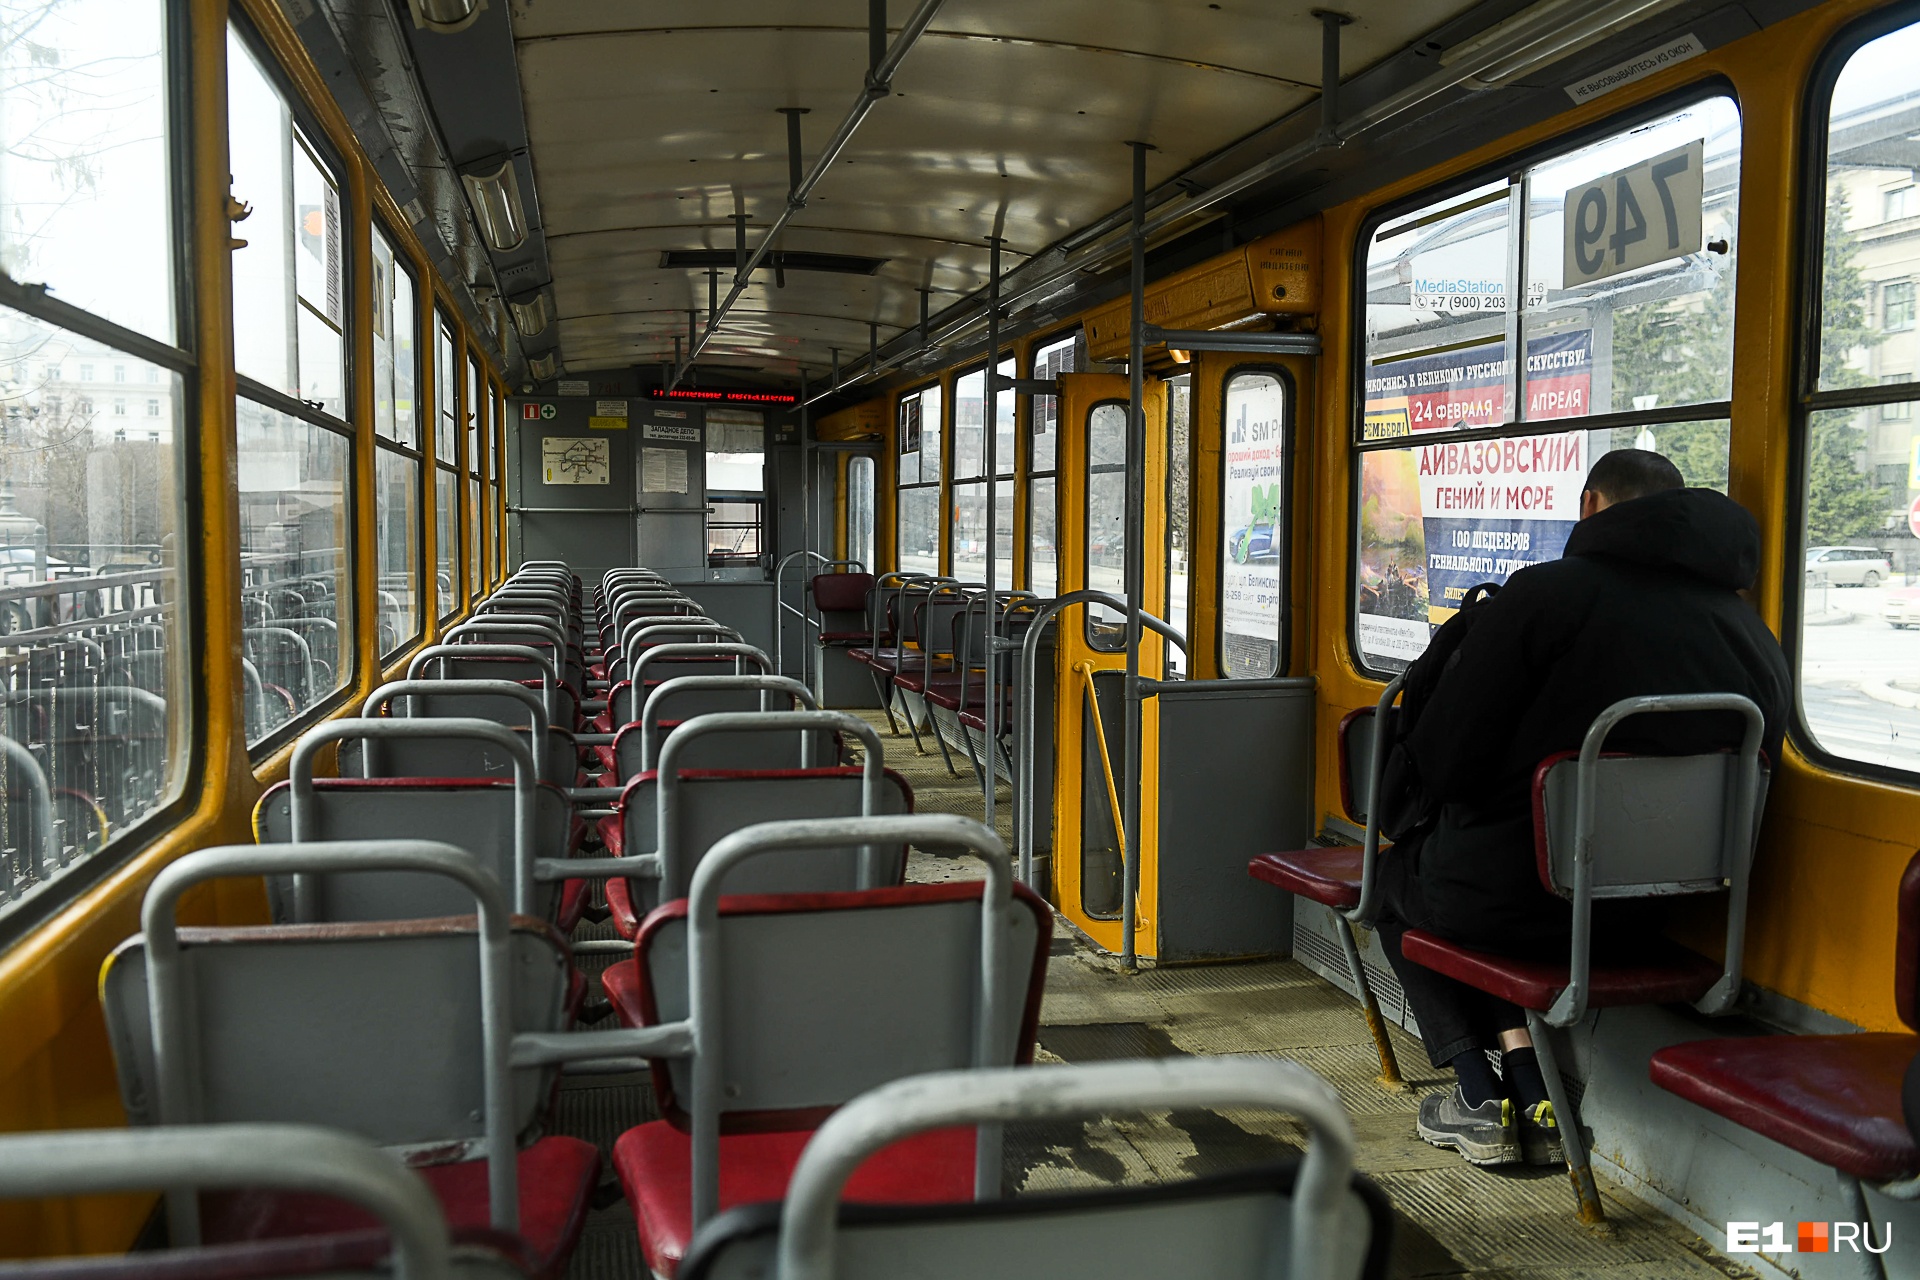 Необитаемый транспорт: фоторепортаж из пустующих автобусов, трамваев и метро Екатеринбурга